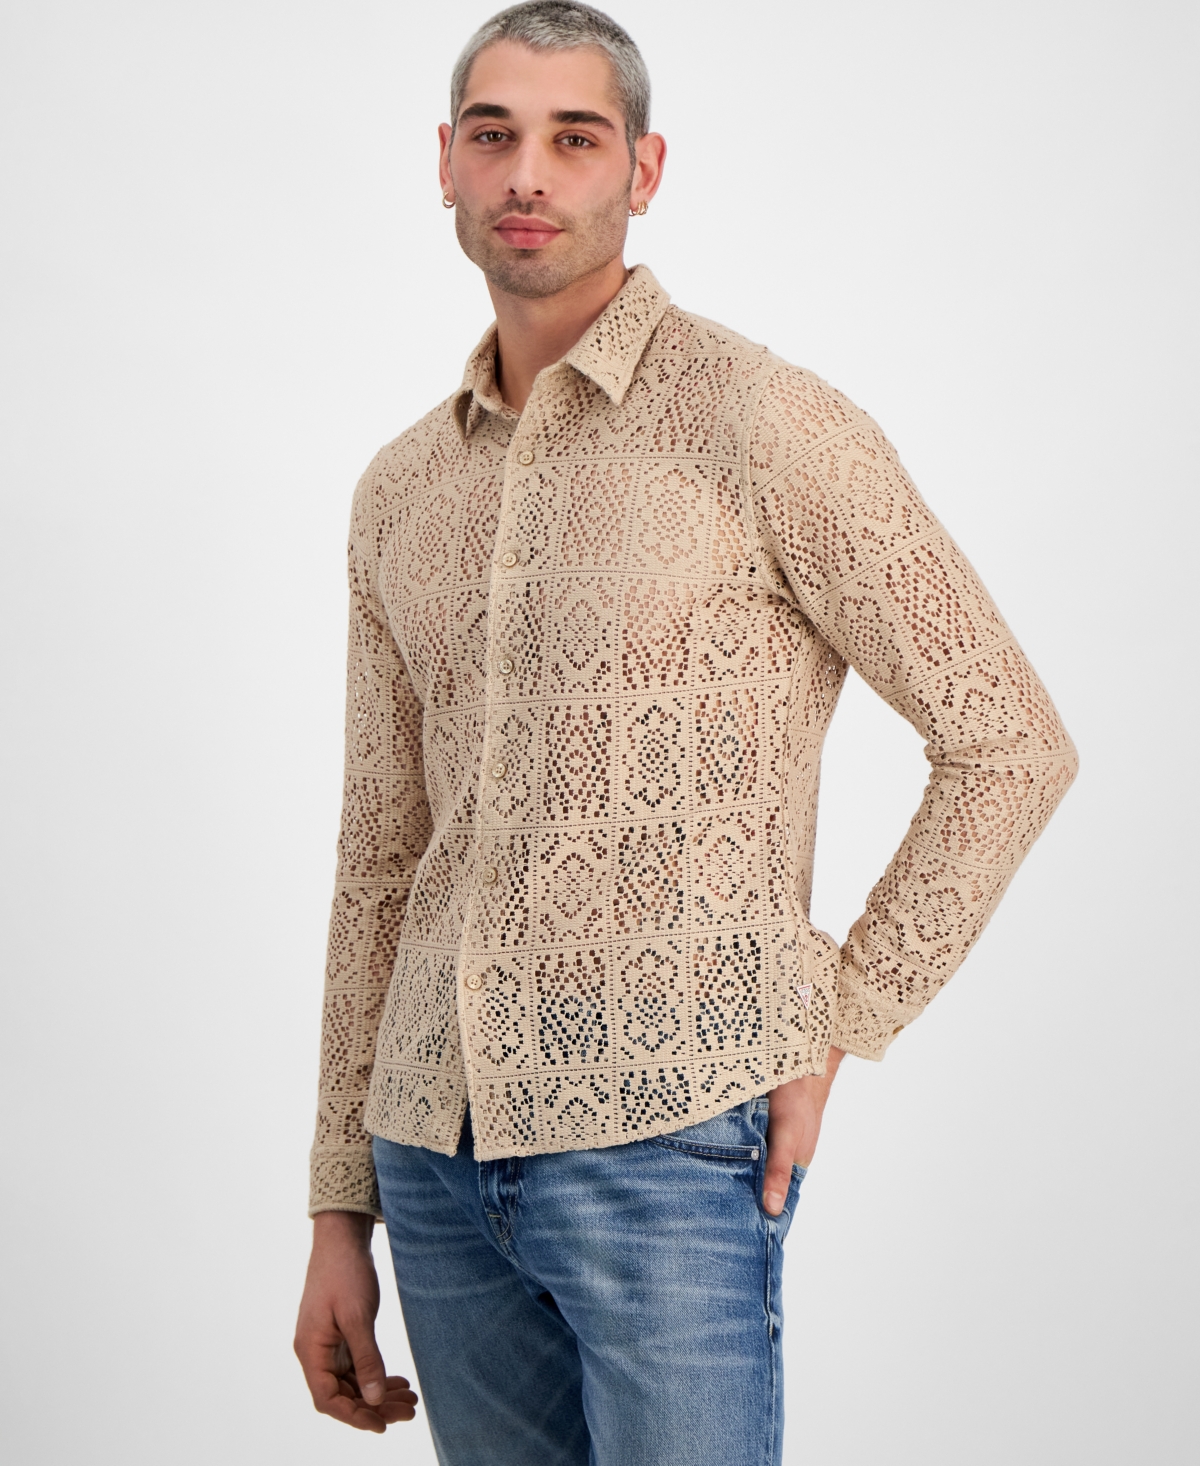 Guess Men's Long Sleeve Craft Crochet Shirt In Neutral Sand